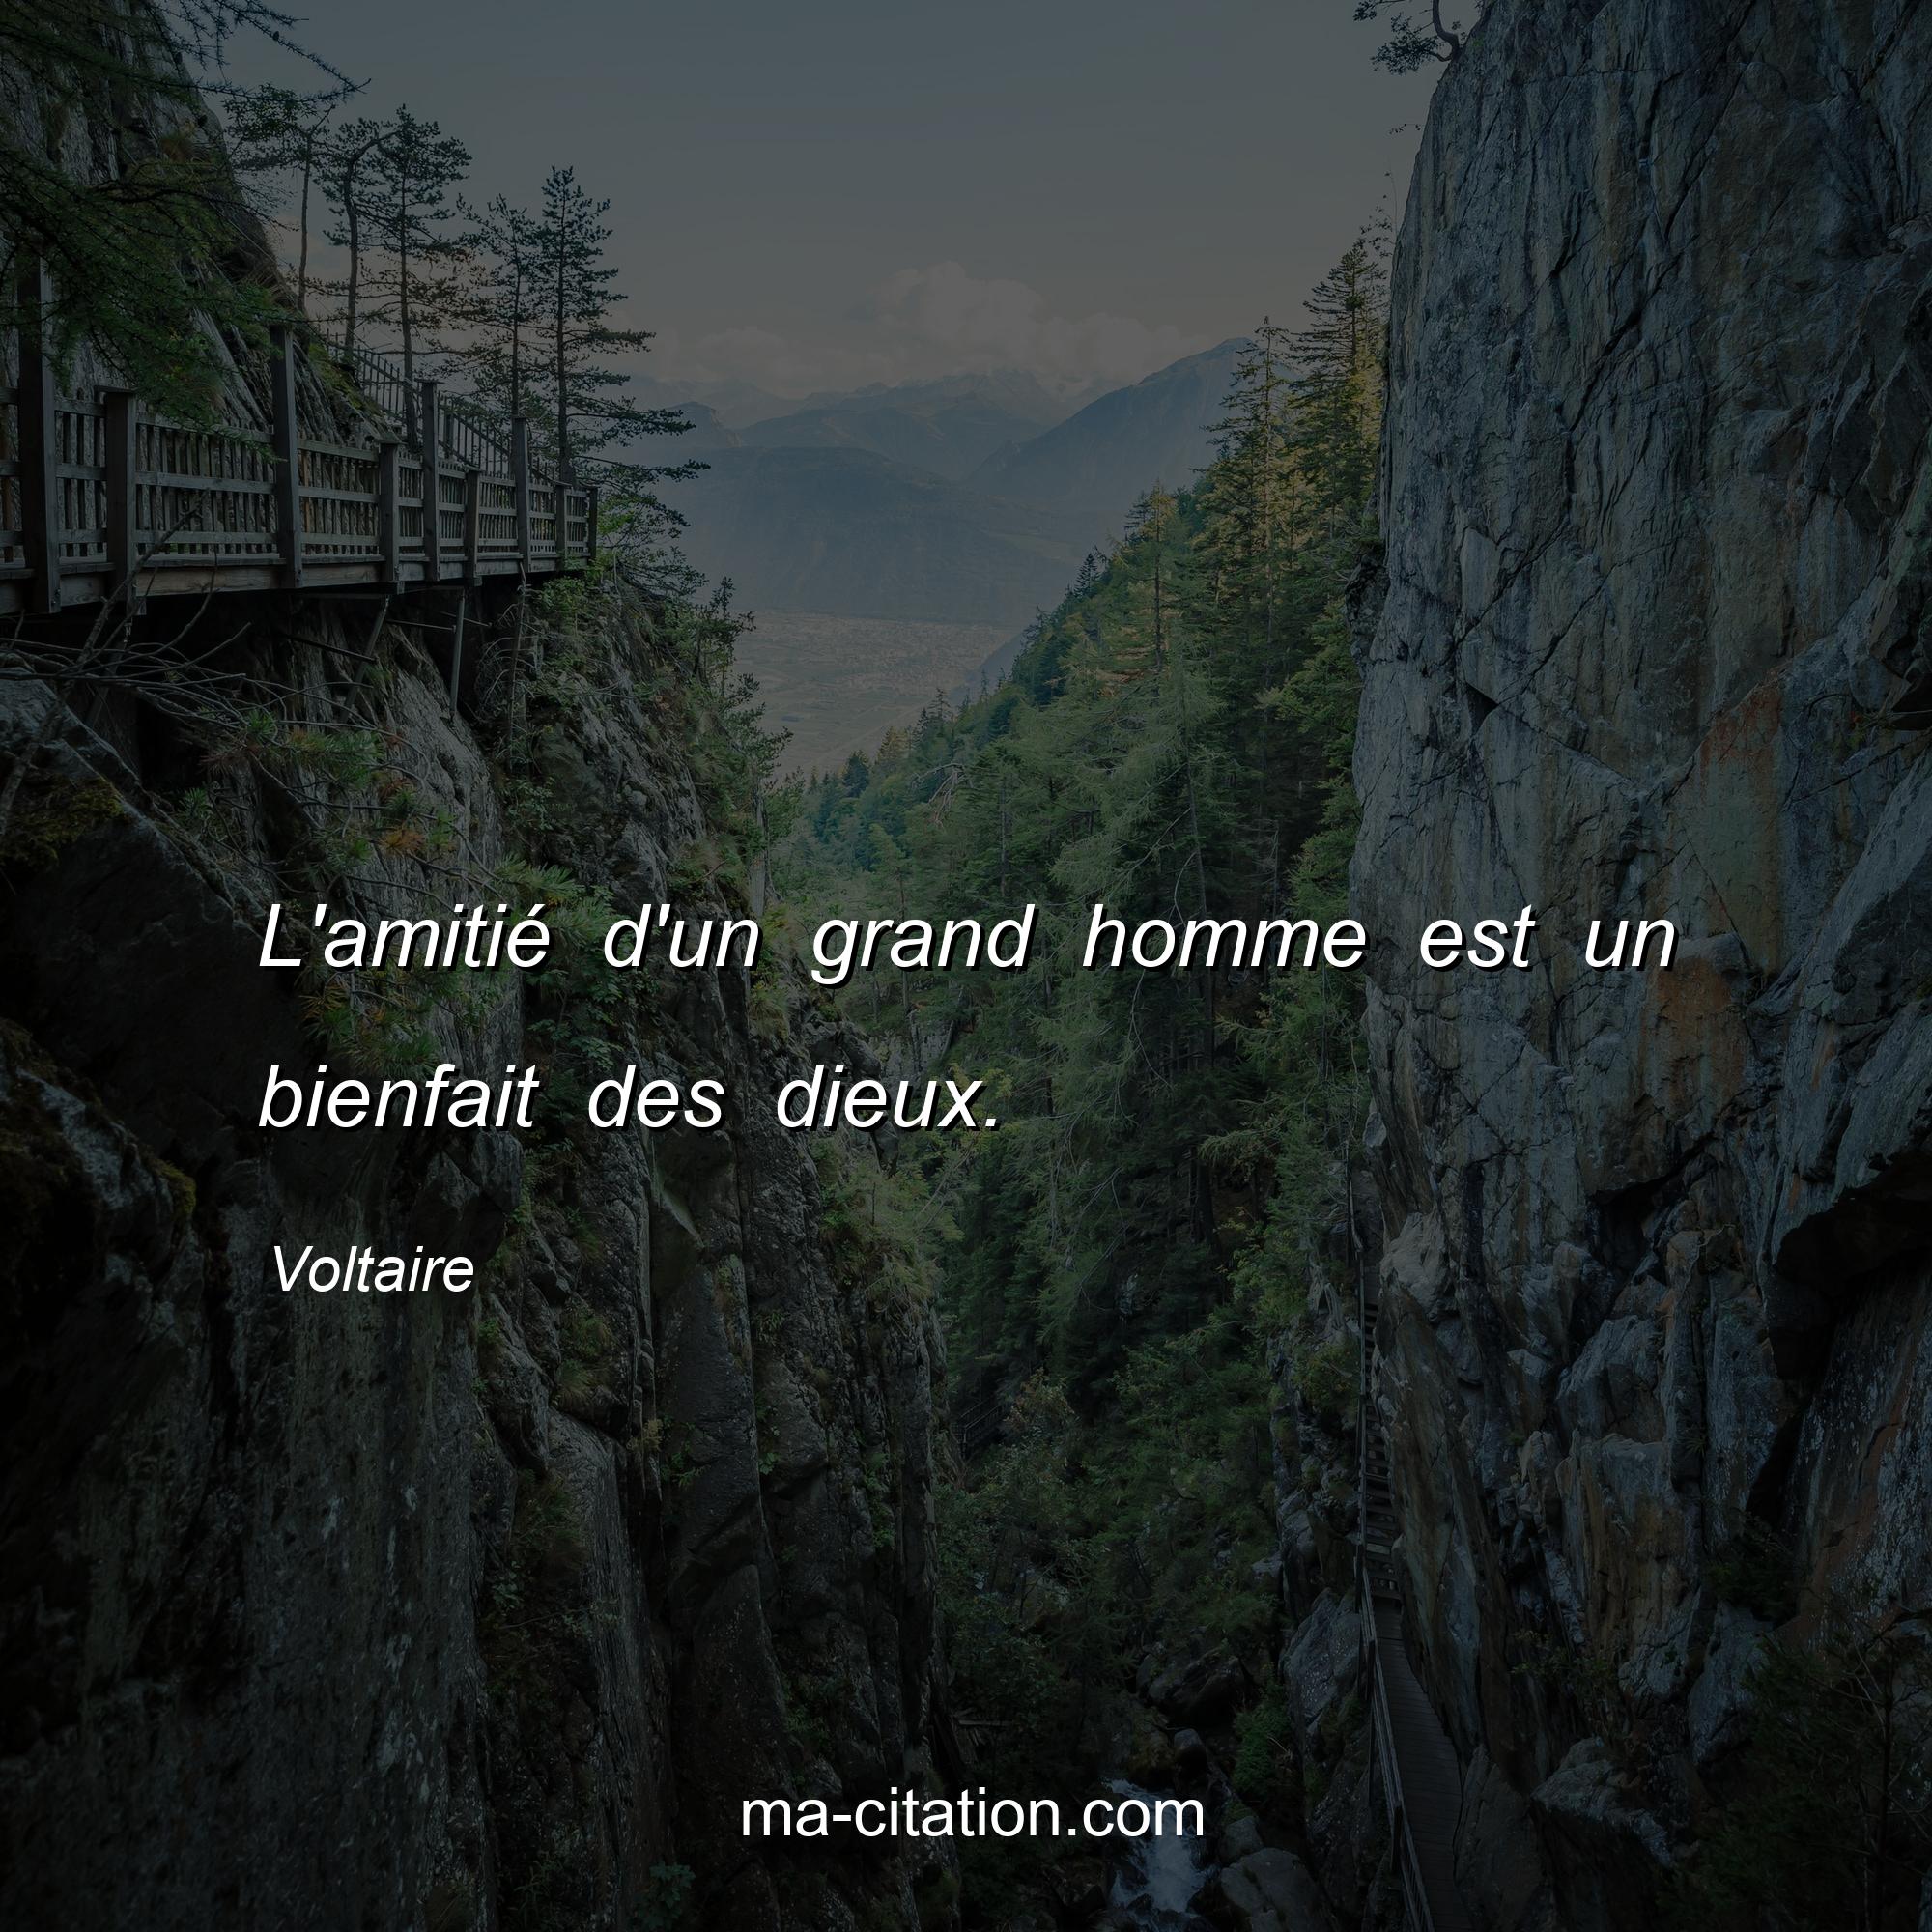 Voltaire : L'amitié d'un grand homme est un bienfait des dieux.